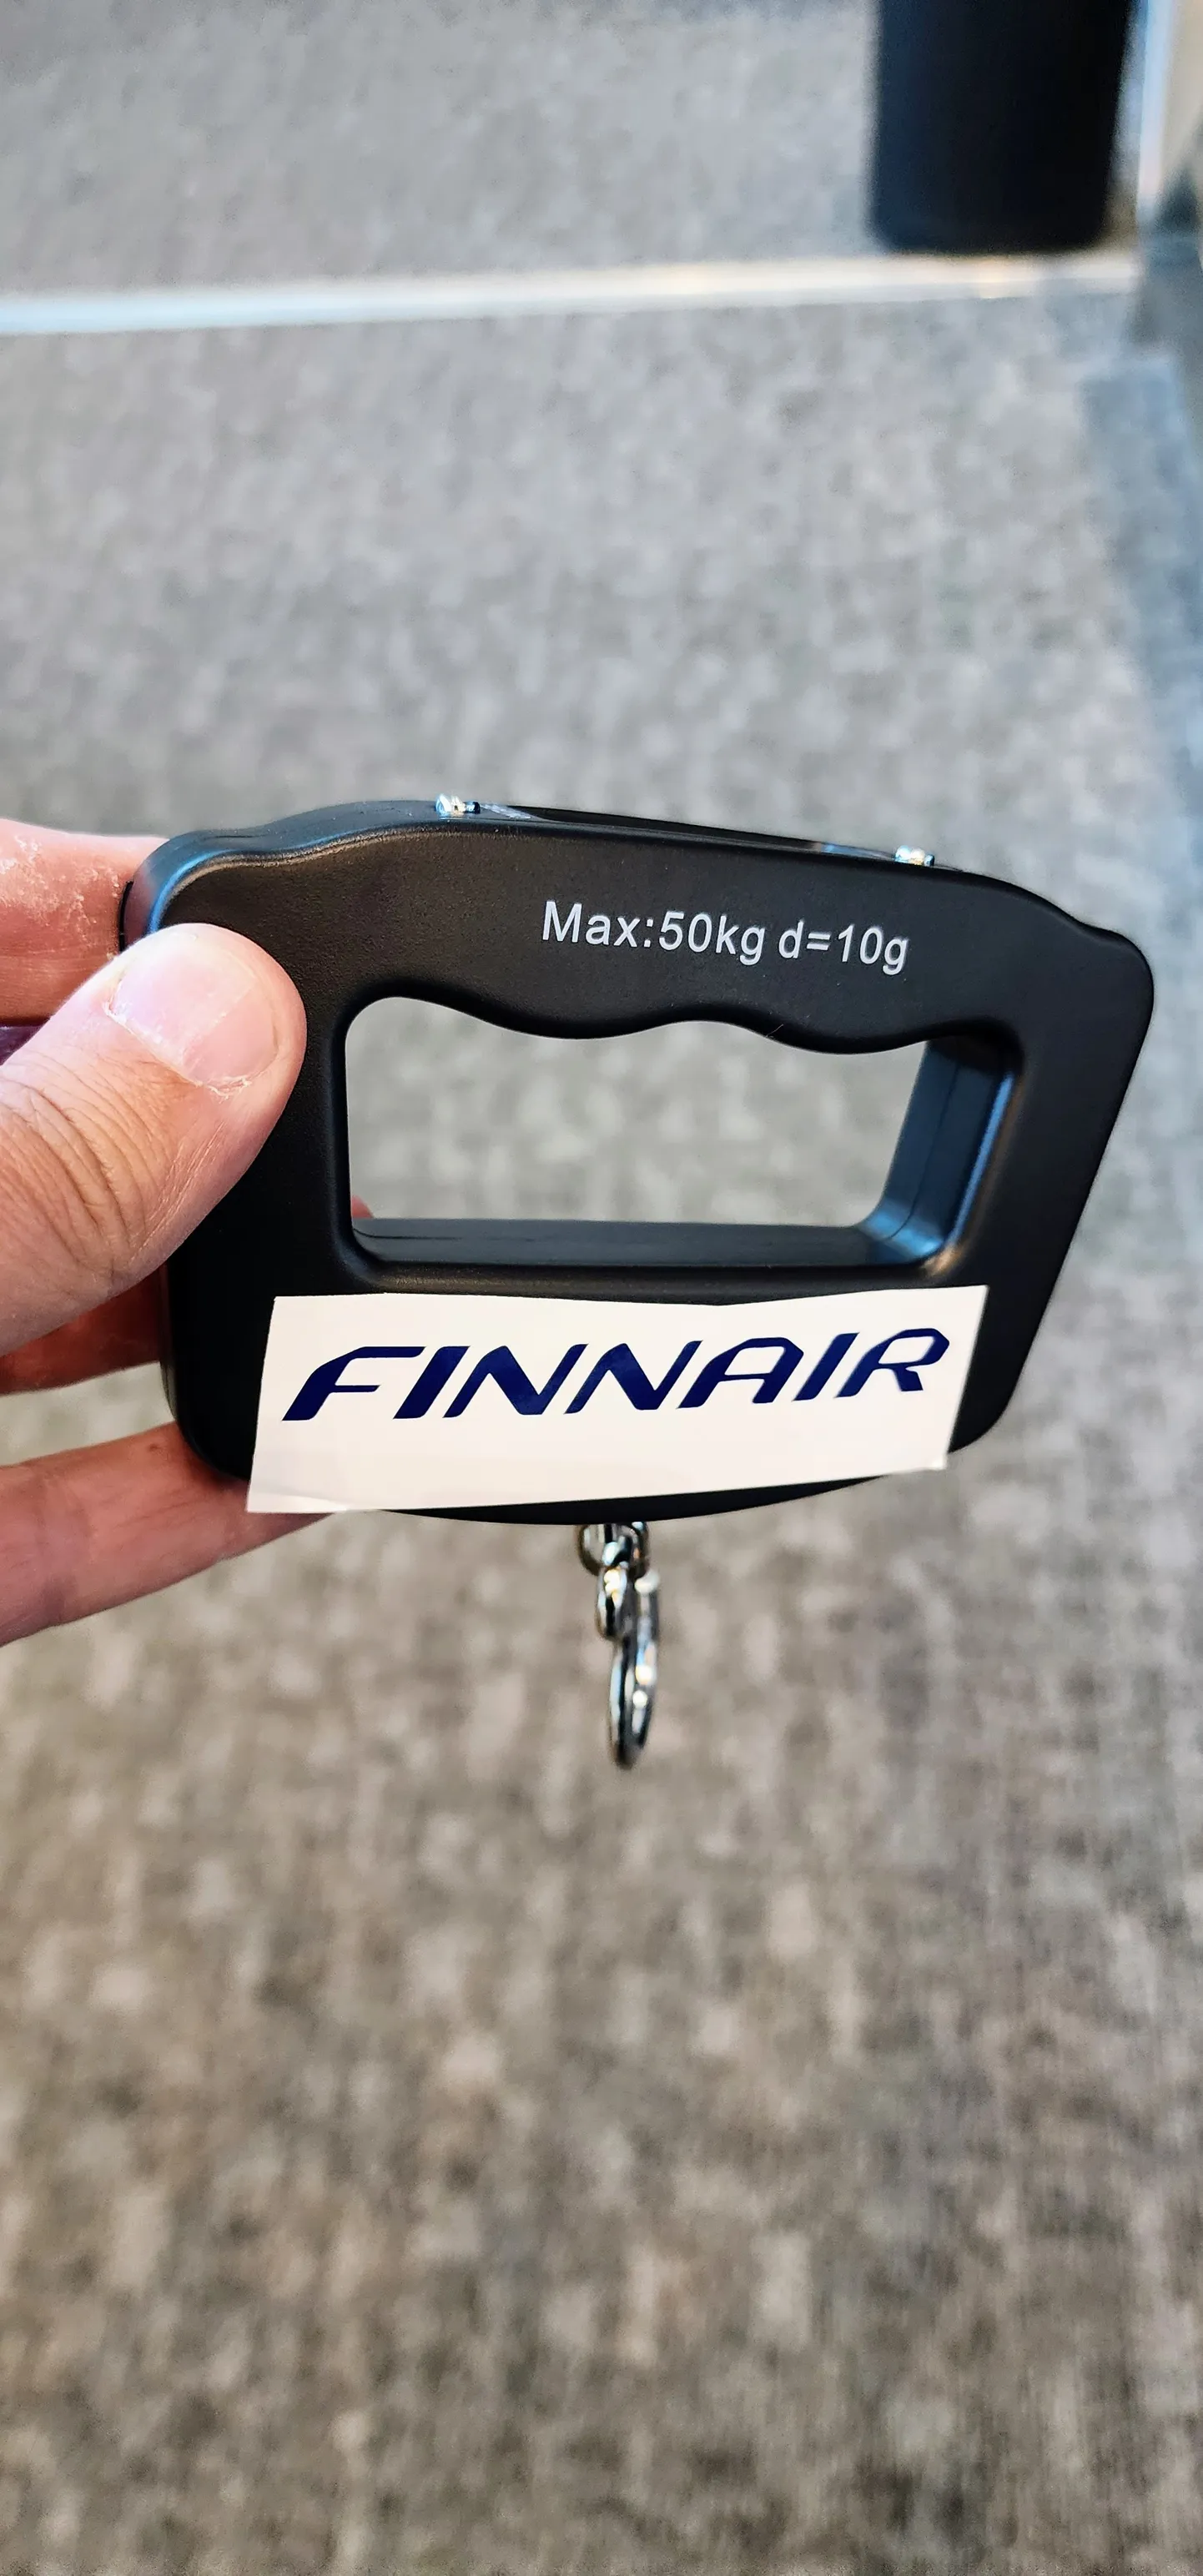 Ручные весы, используемые сотрудниками Finnair для взвешивания багажа в аэропорту Хельсинки.